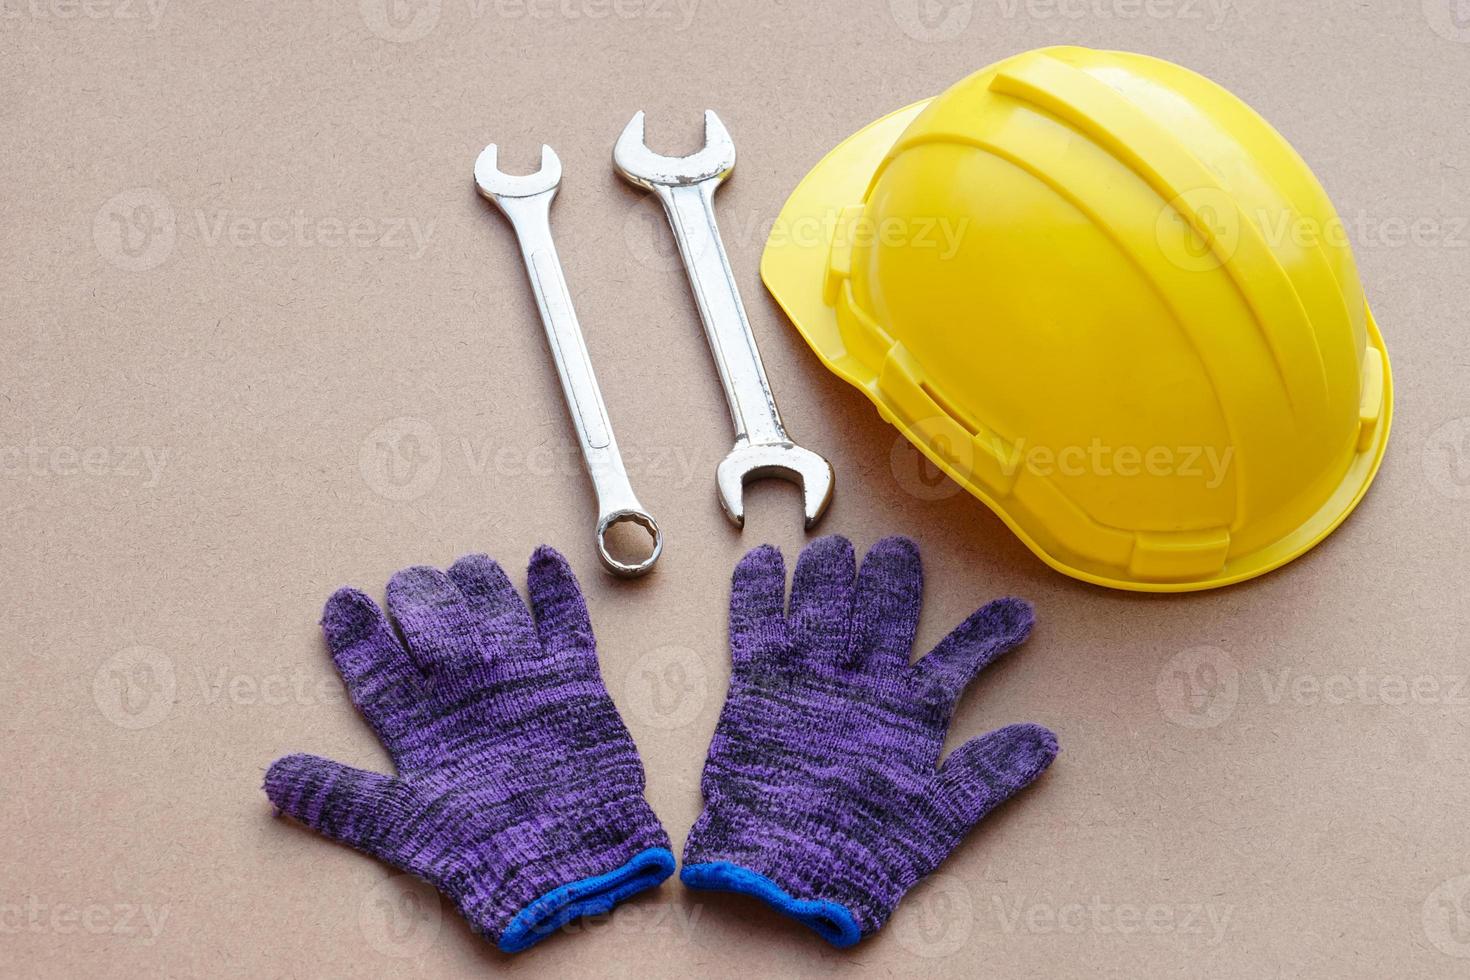 casco amarillo, llave inglesa y guantes. concepto, manitas o herramientas mecánicas. equipo para arreglar o reparar, renovar en la vida diaria. foto